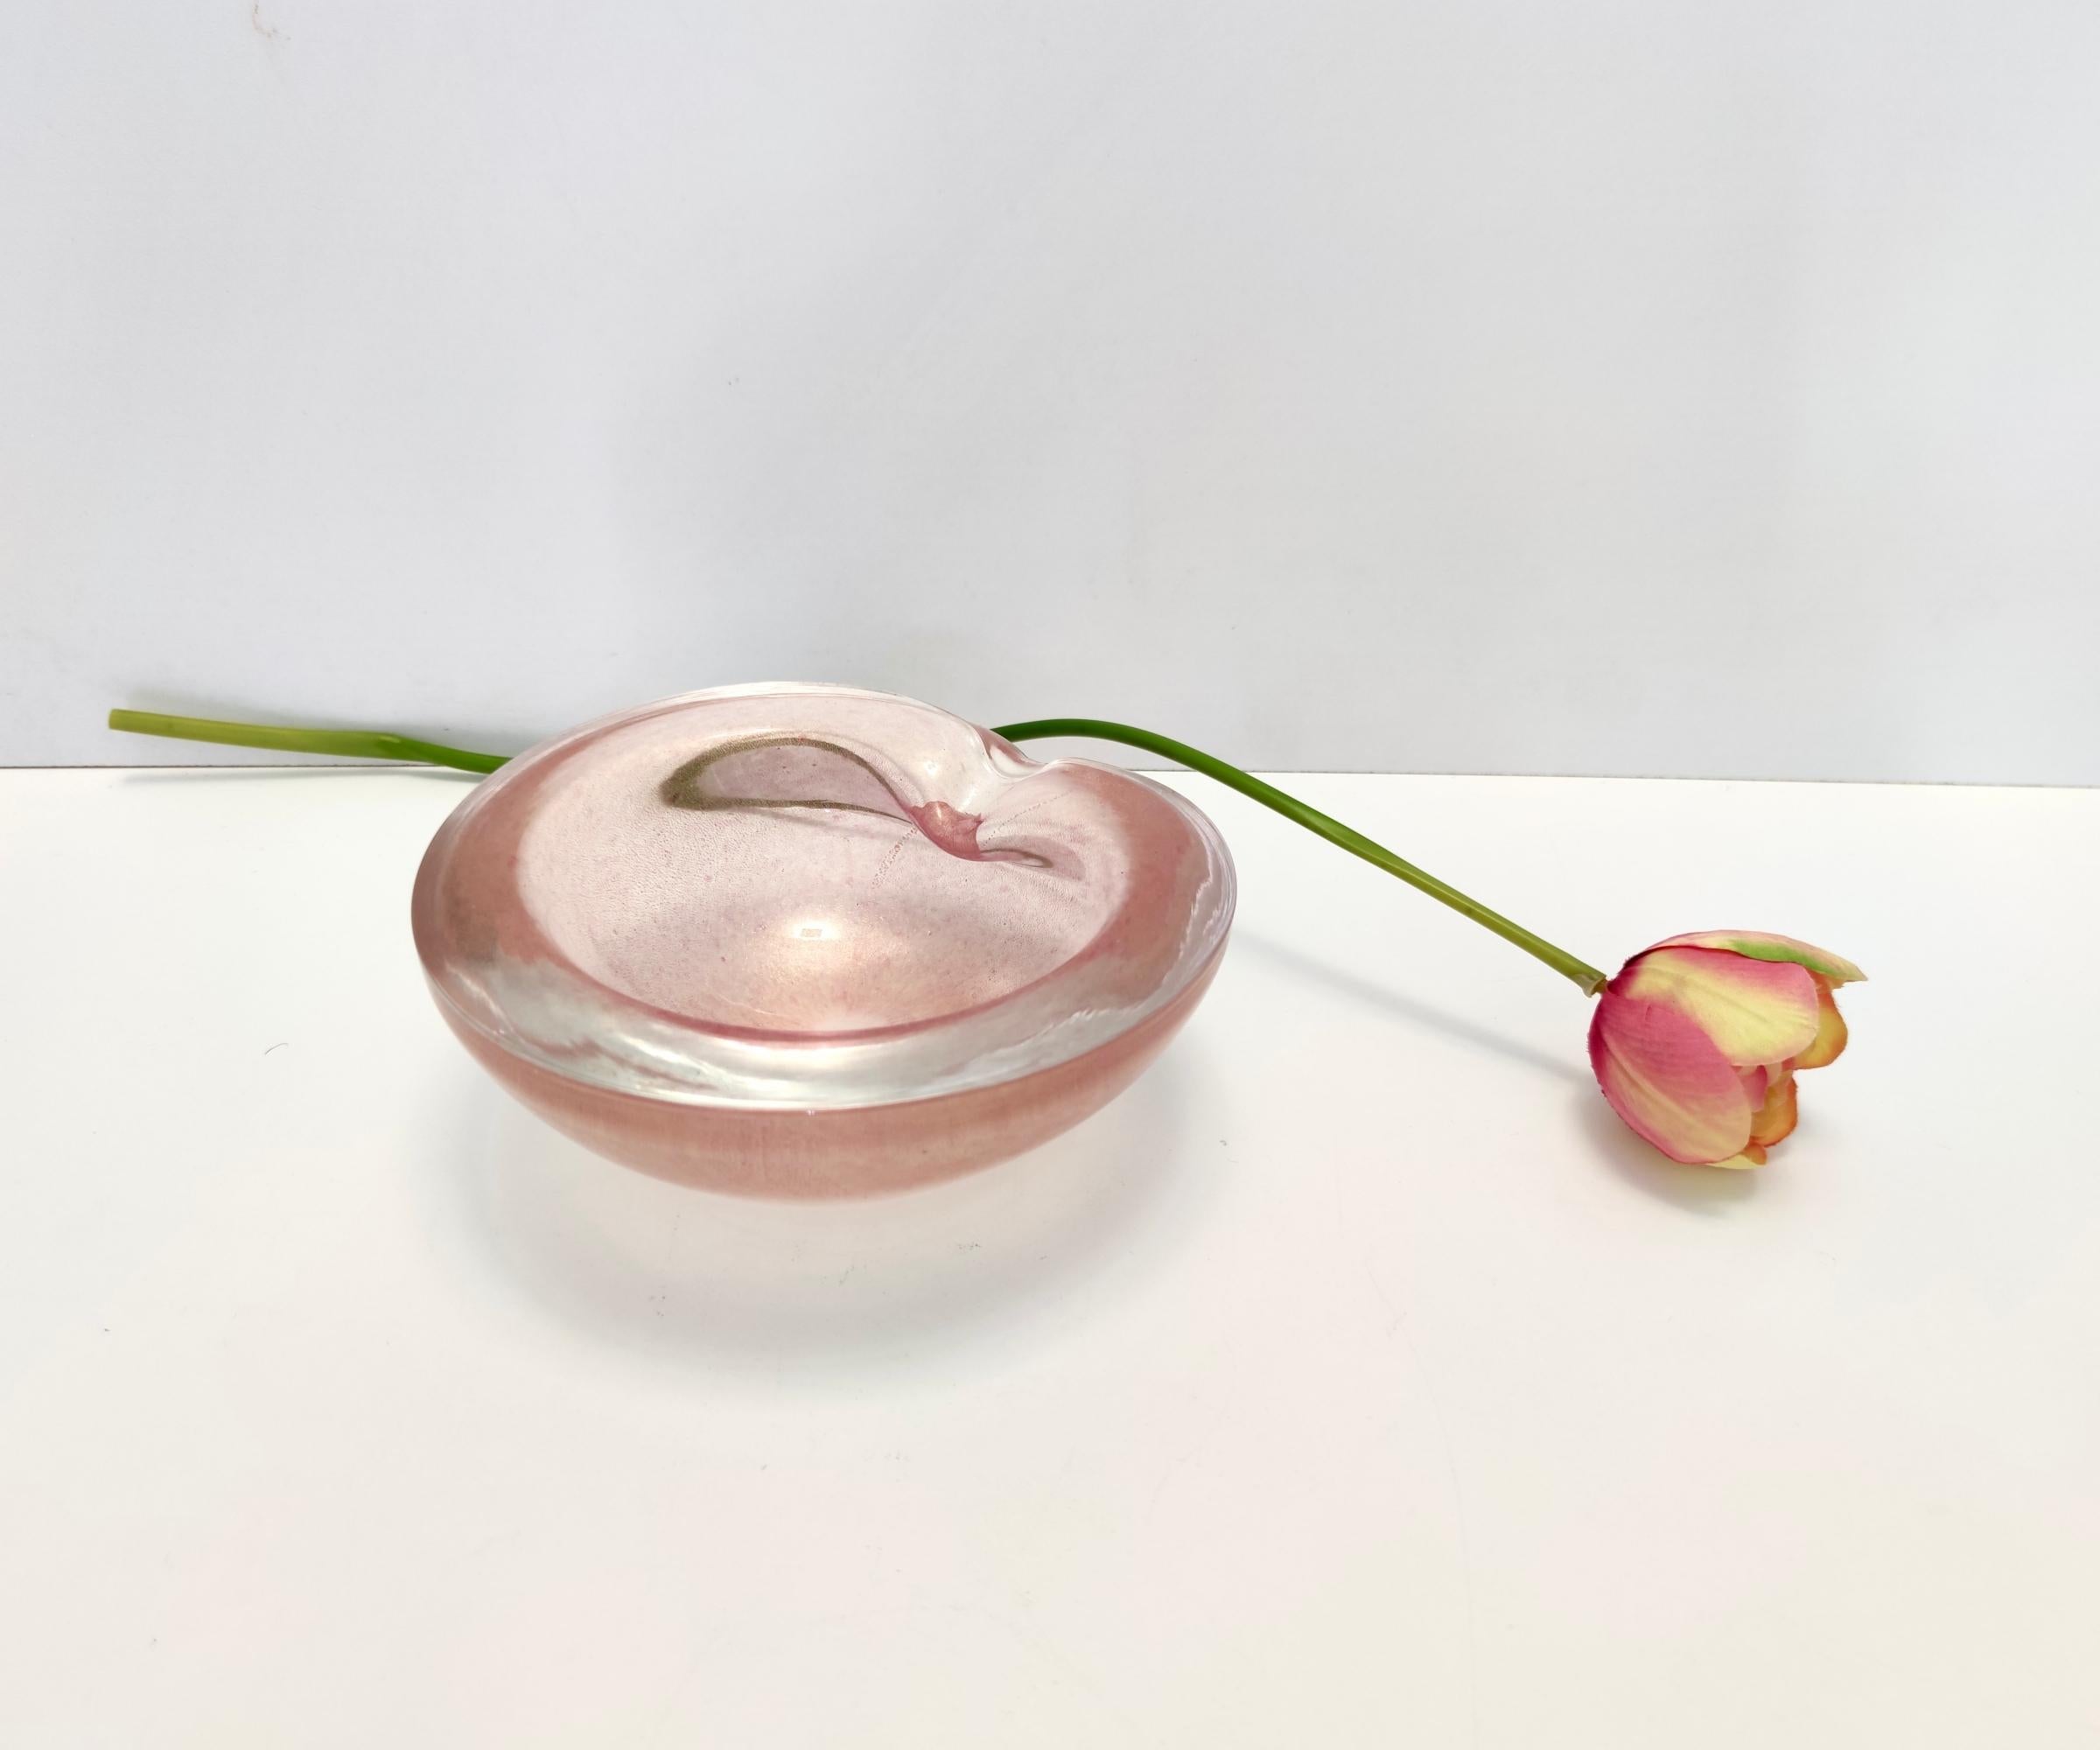 Fabriqué en Italie, dans les années 1950 - 1960, dans le style de Barbini. 
Réalisé en verre de Murano rose pêche épais avec feuille d'or, légèrement irisé, avec une fabrication en fer clair. 
La technique est celle du sommerso. 
Il s'agit d'une